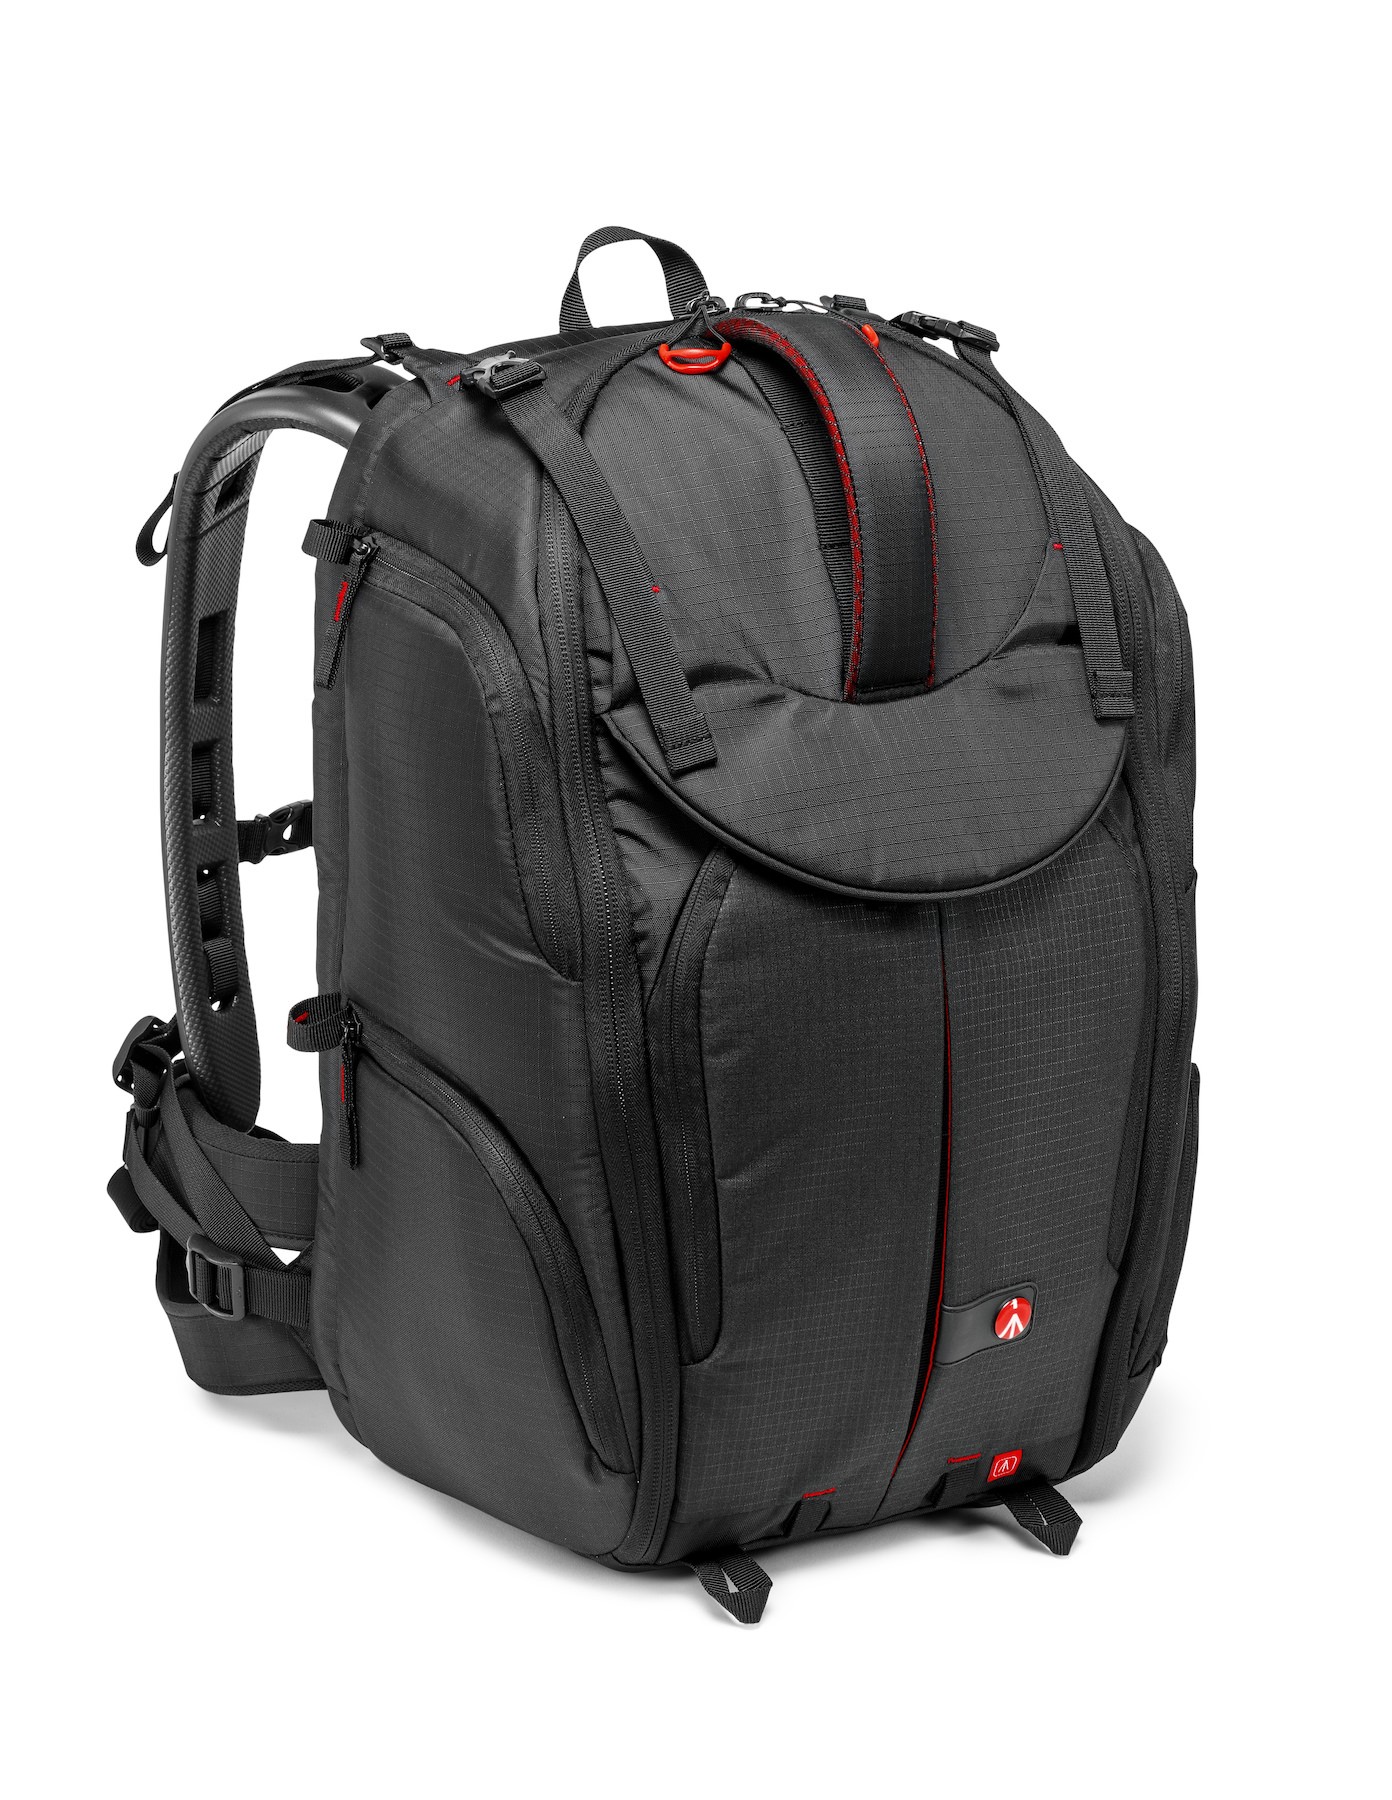 Pro Light camera backpack PV-410, camcorder/VDSLR